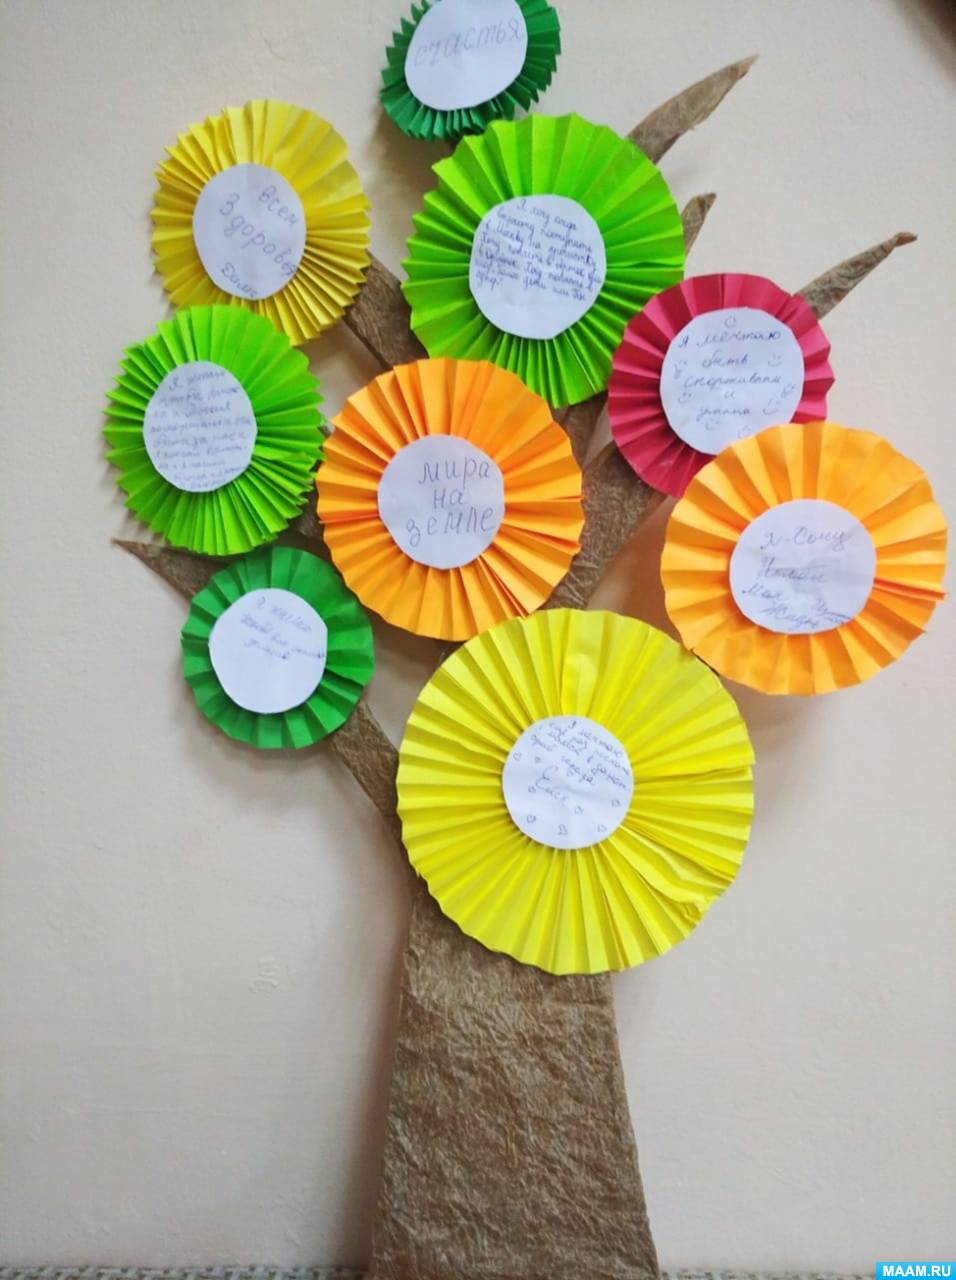 Детский мастер-класс по изготовлению поделки из цветного картона «Волшебное дерево желаний» для детей 12–17 лет с ОВЗ